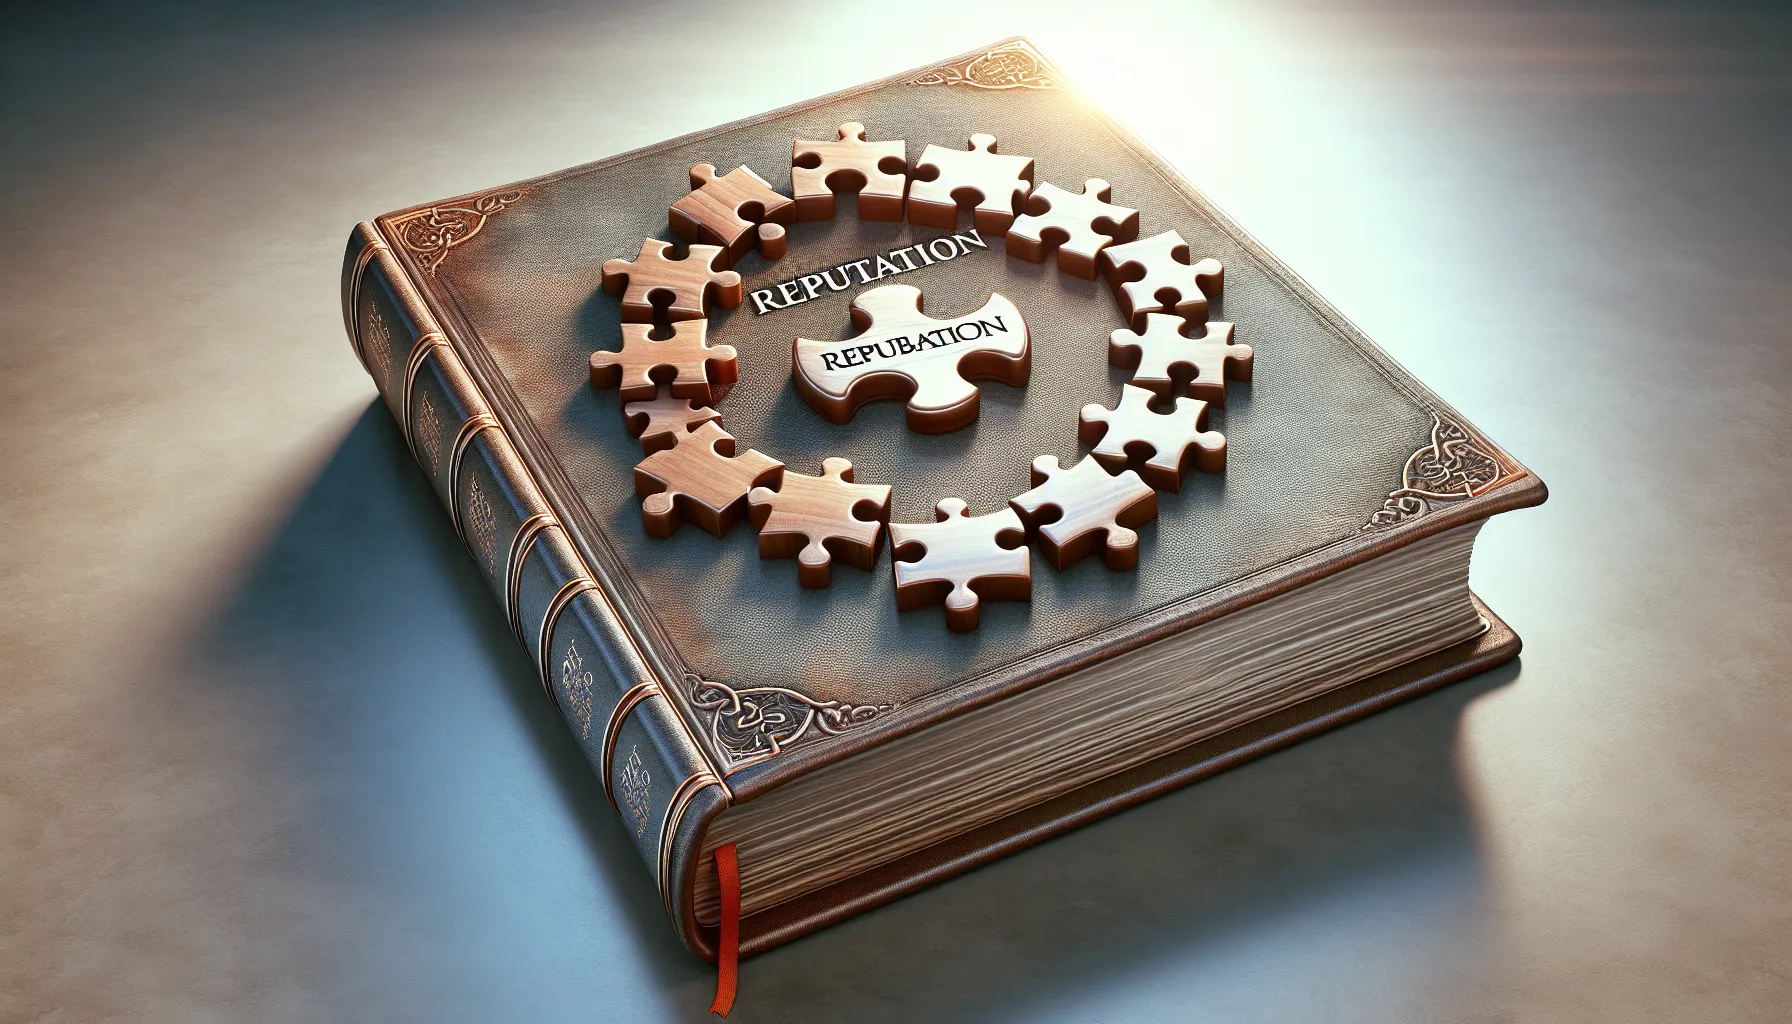 Imagen ilustrativa de una Biblia abierta con un rompecabezas de piezas unidas